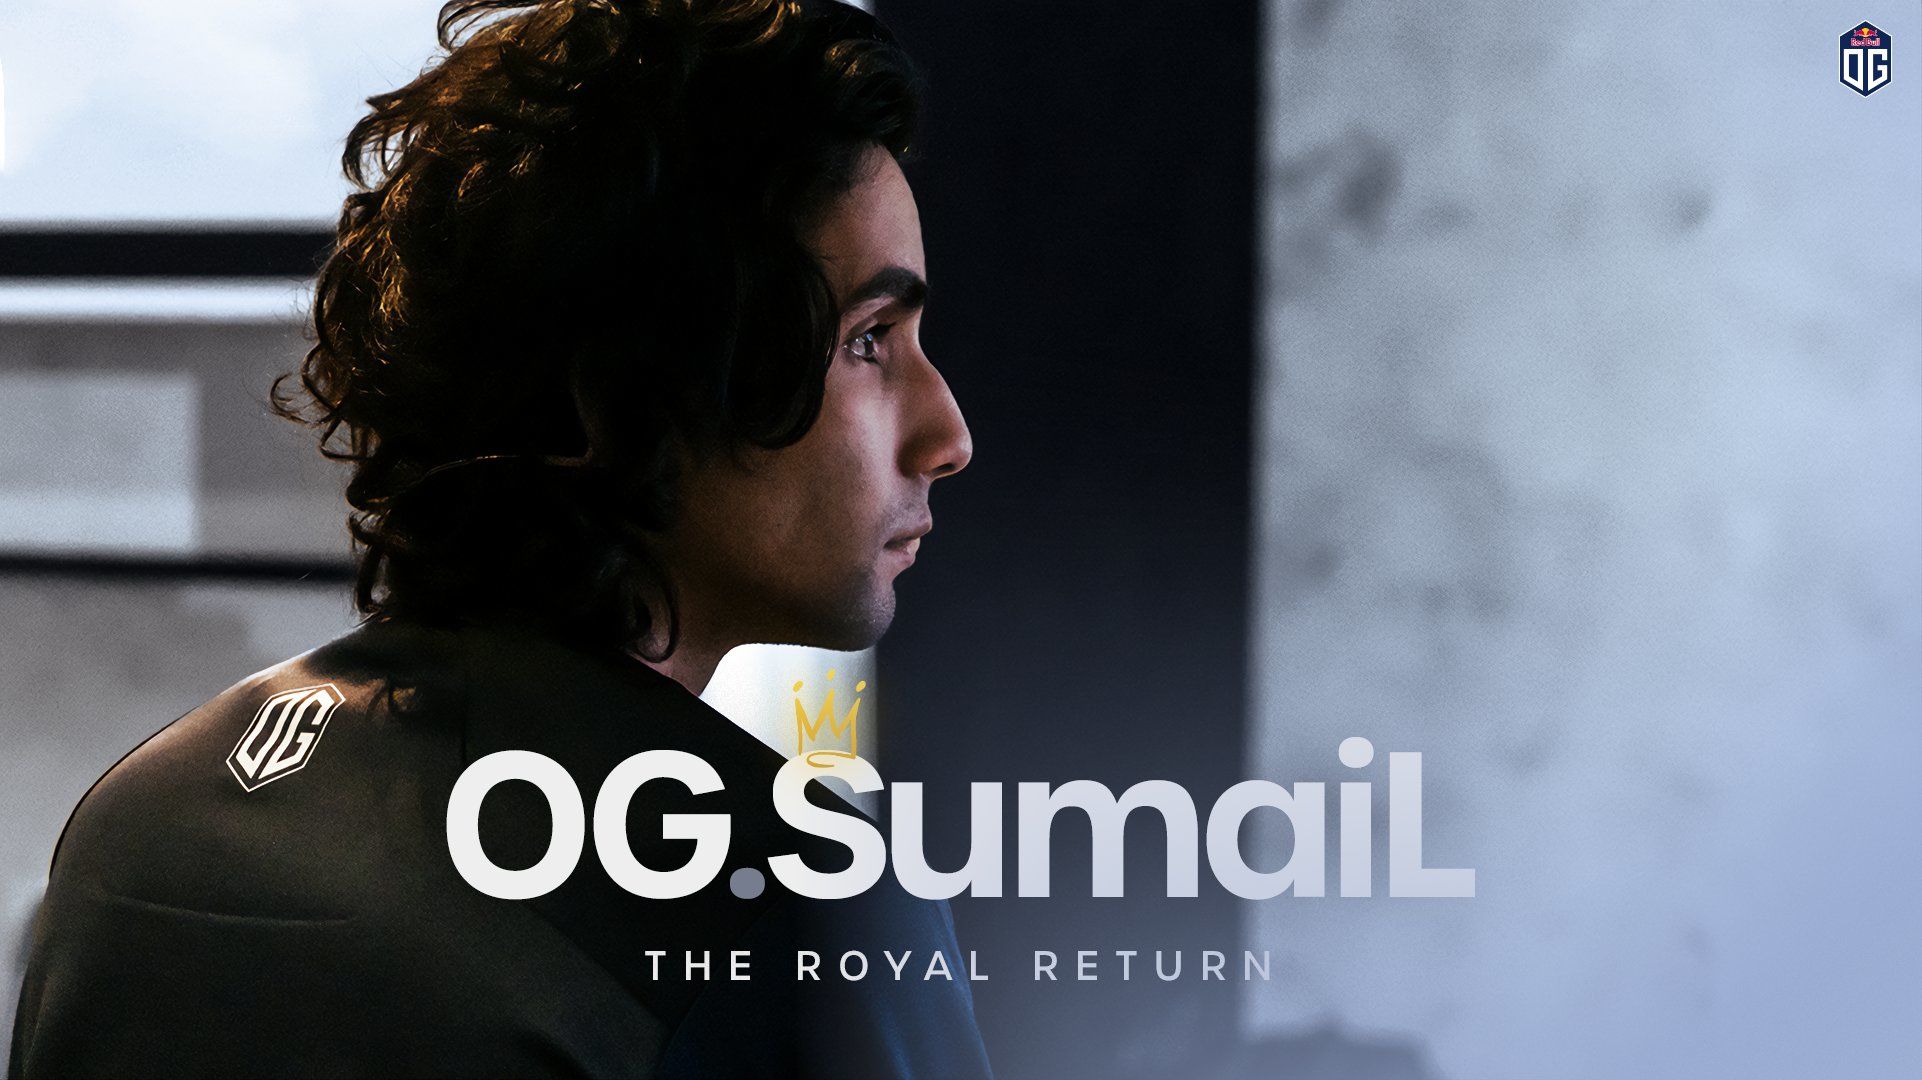 Sumail официально вернулся в состав OG по Dota 2